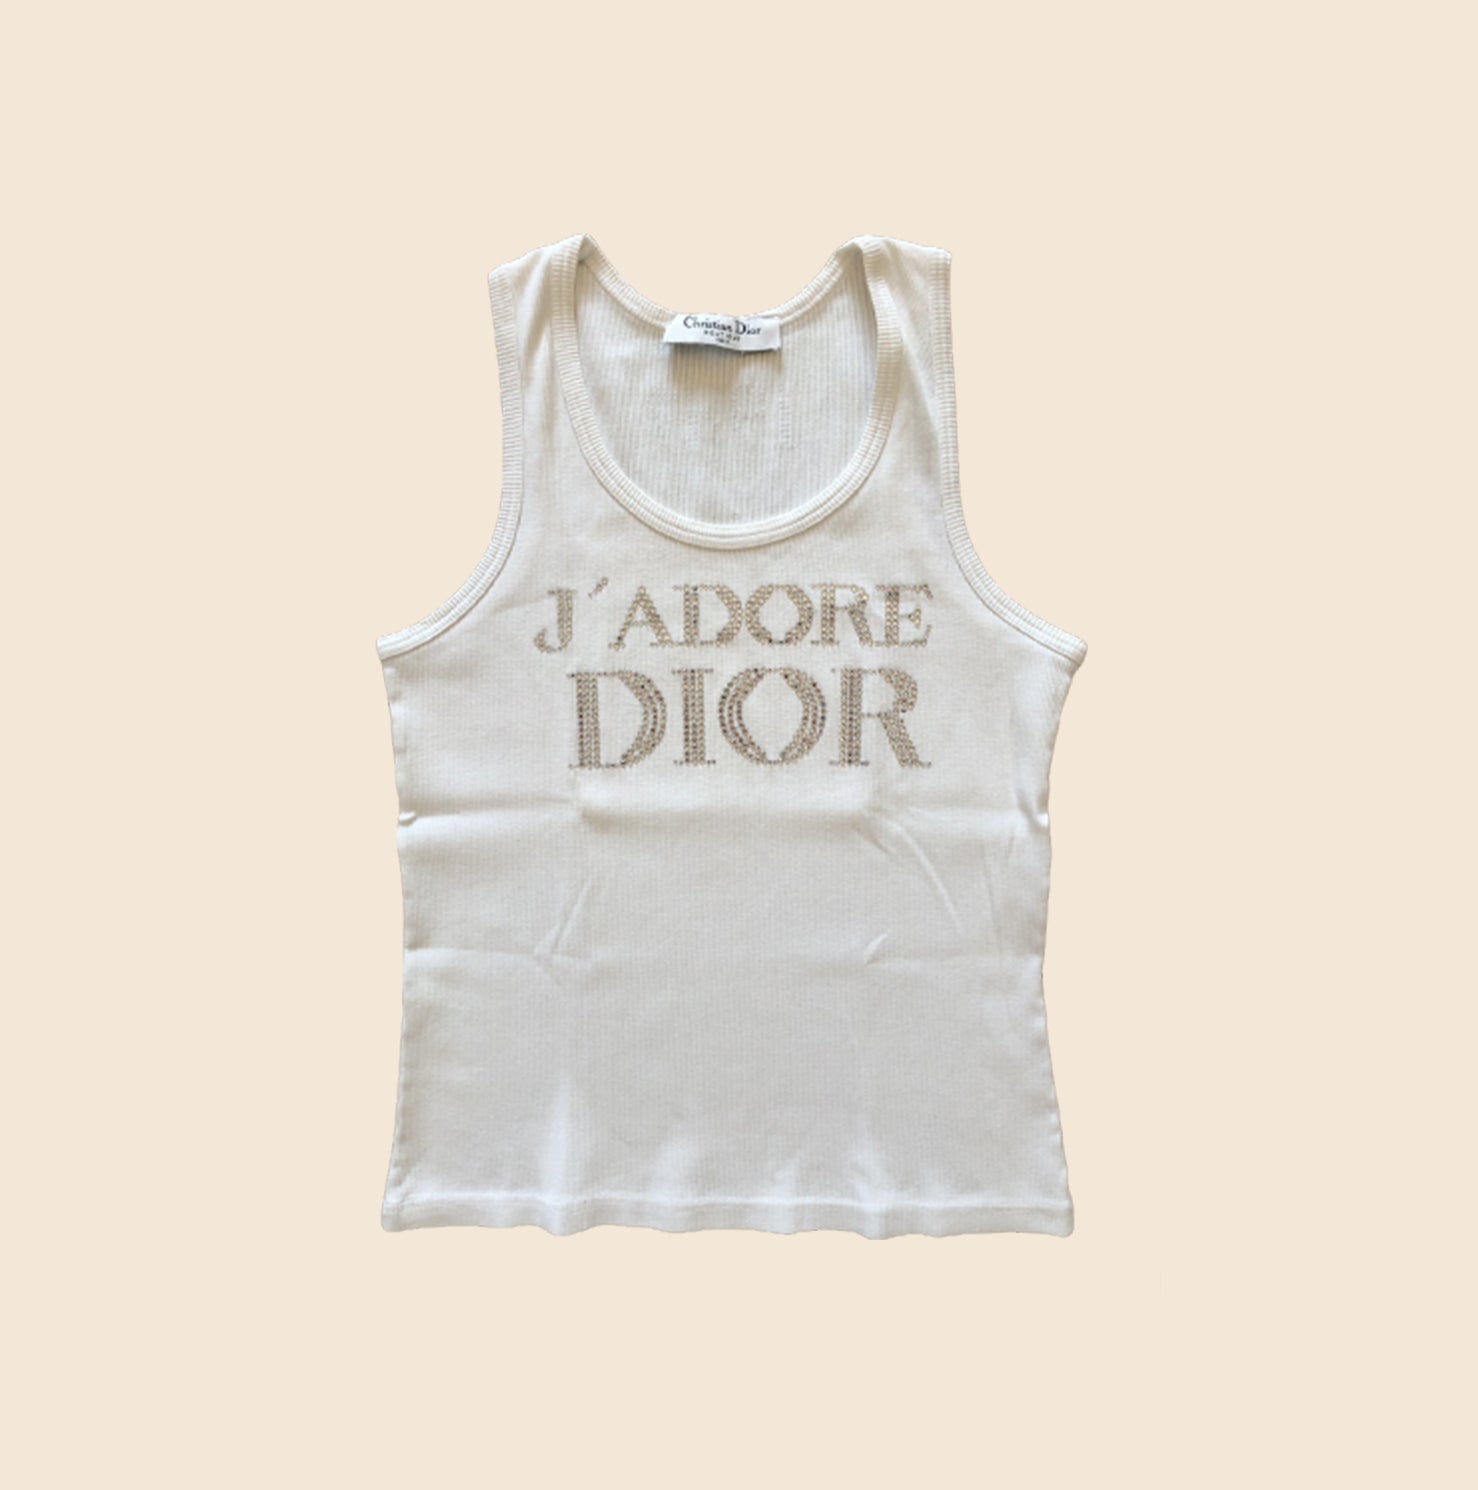 Dior Crop Top 